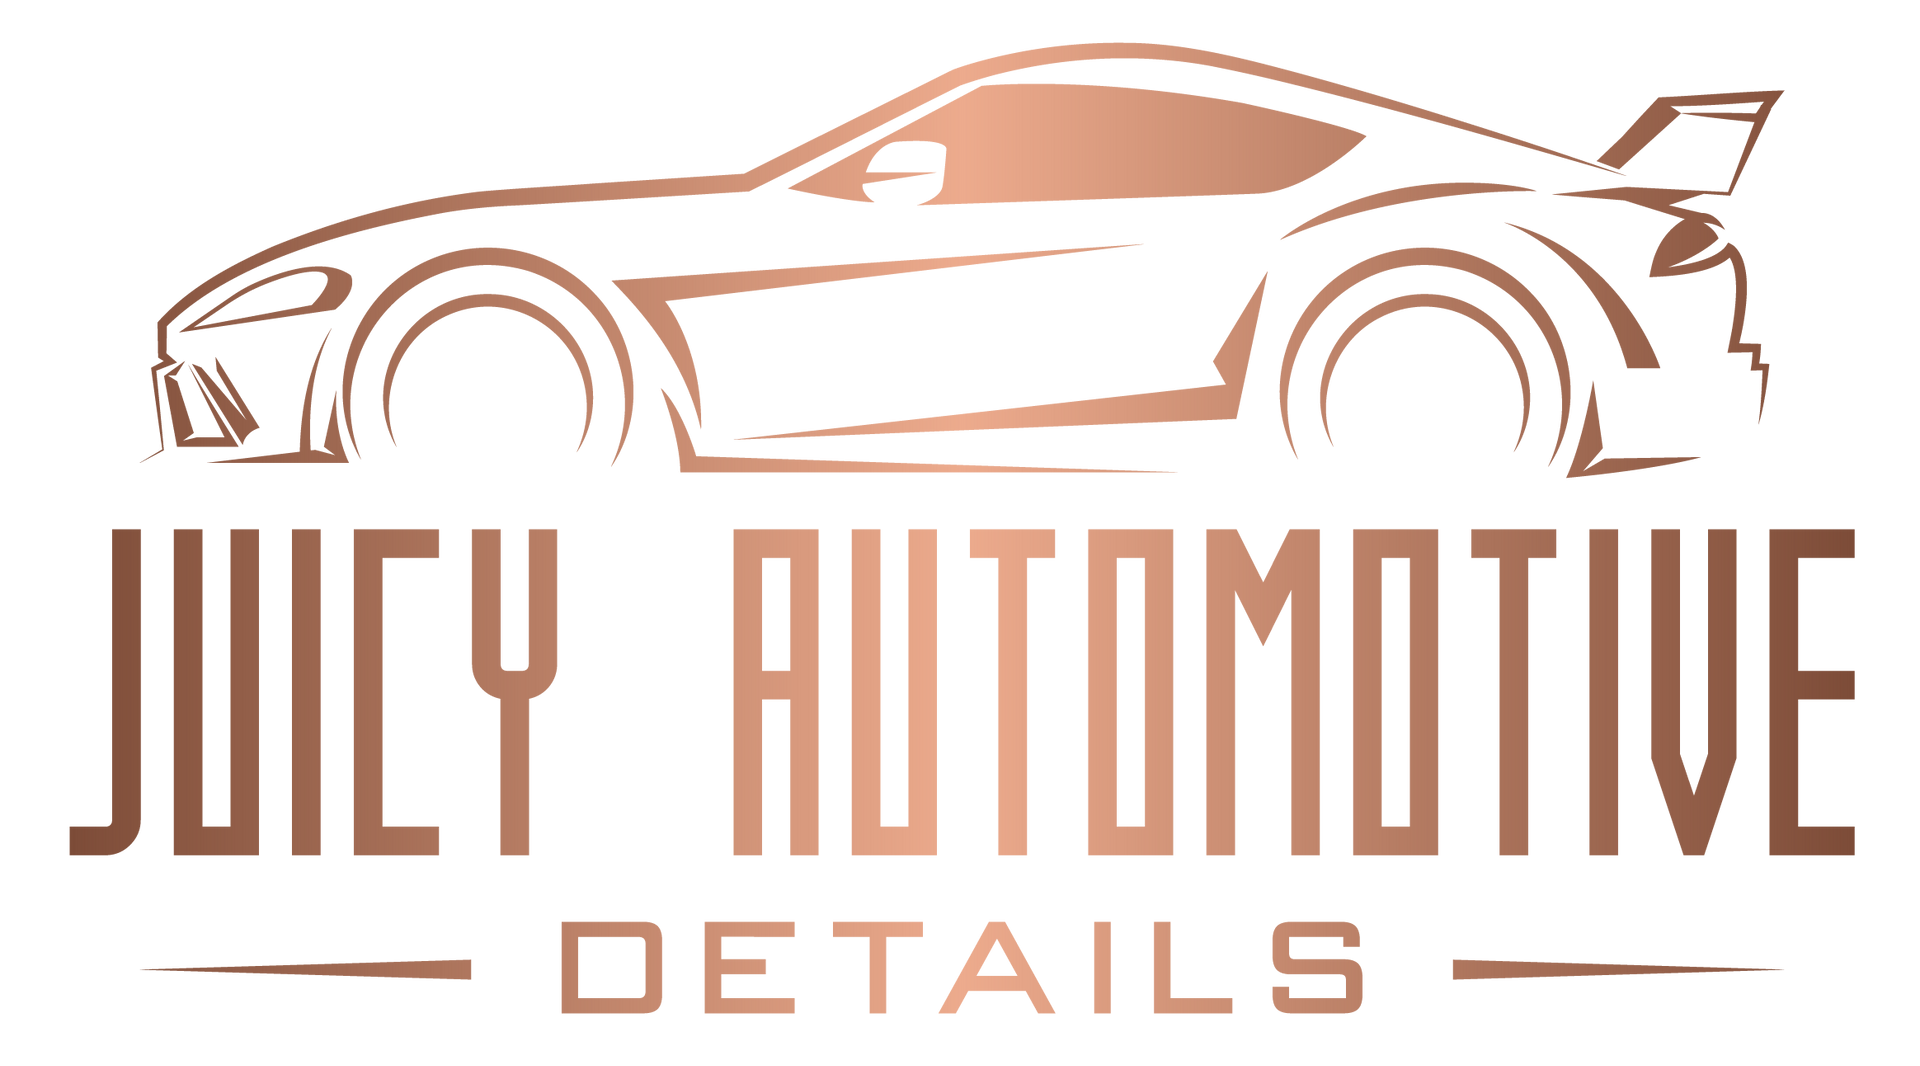 Juicy Automotive Details 